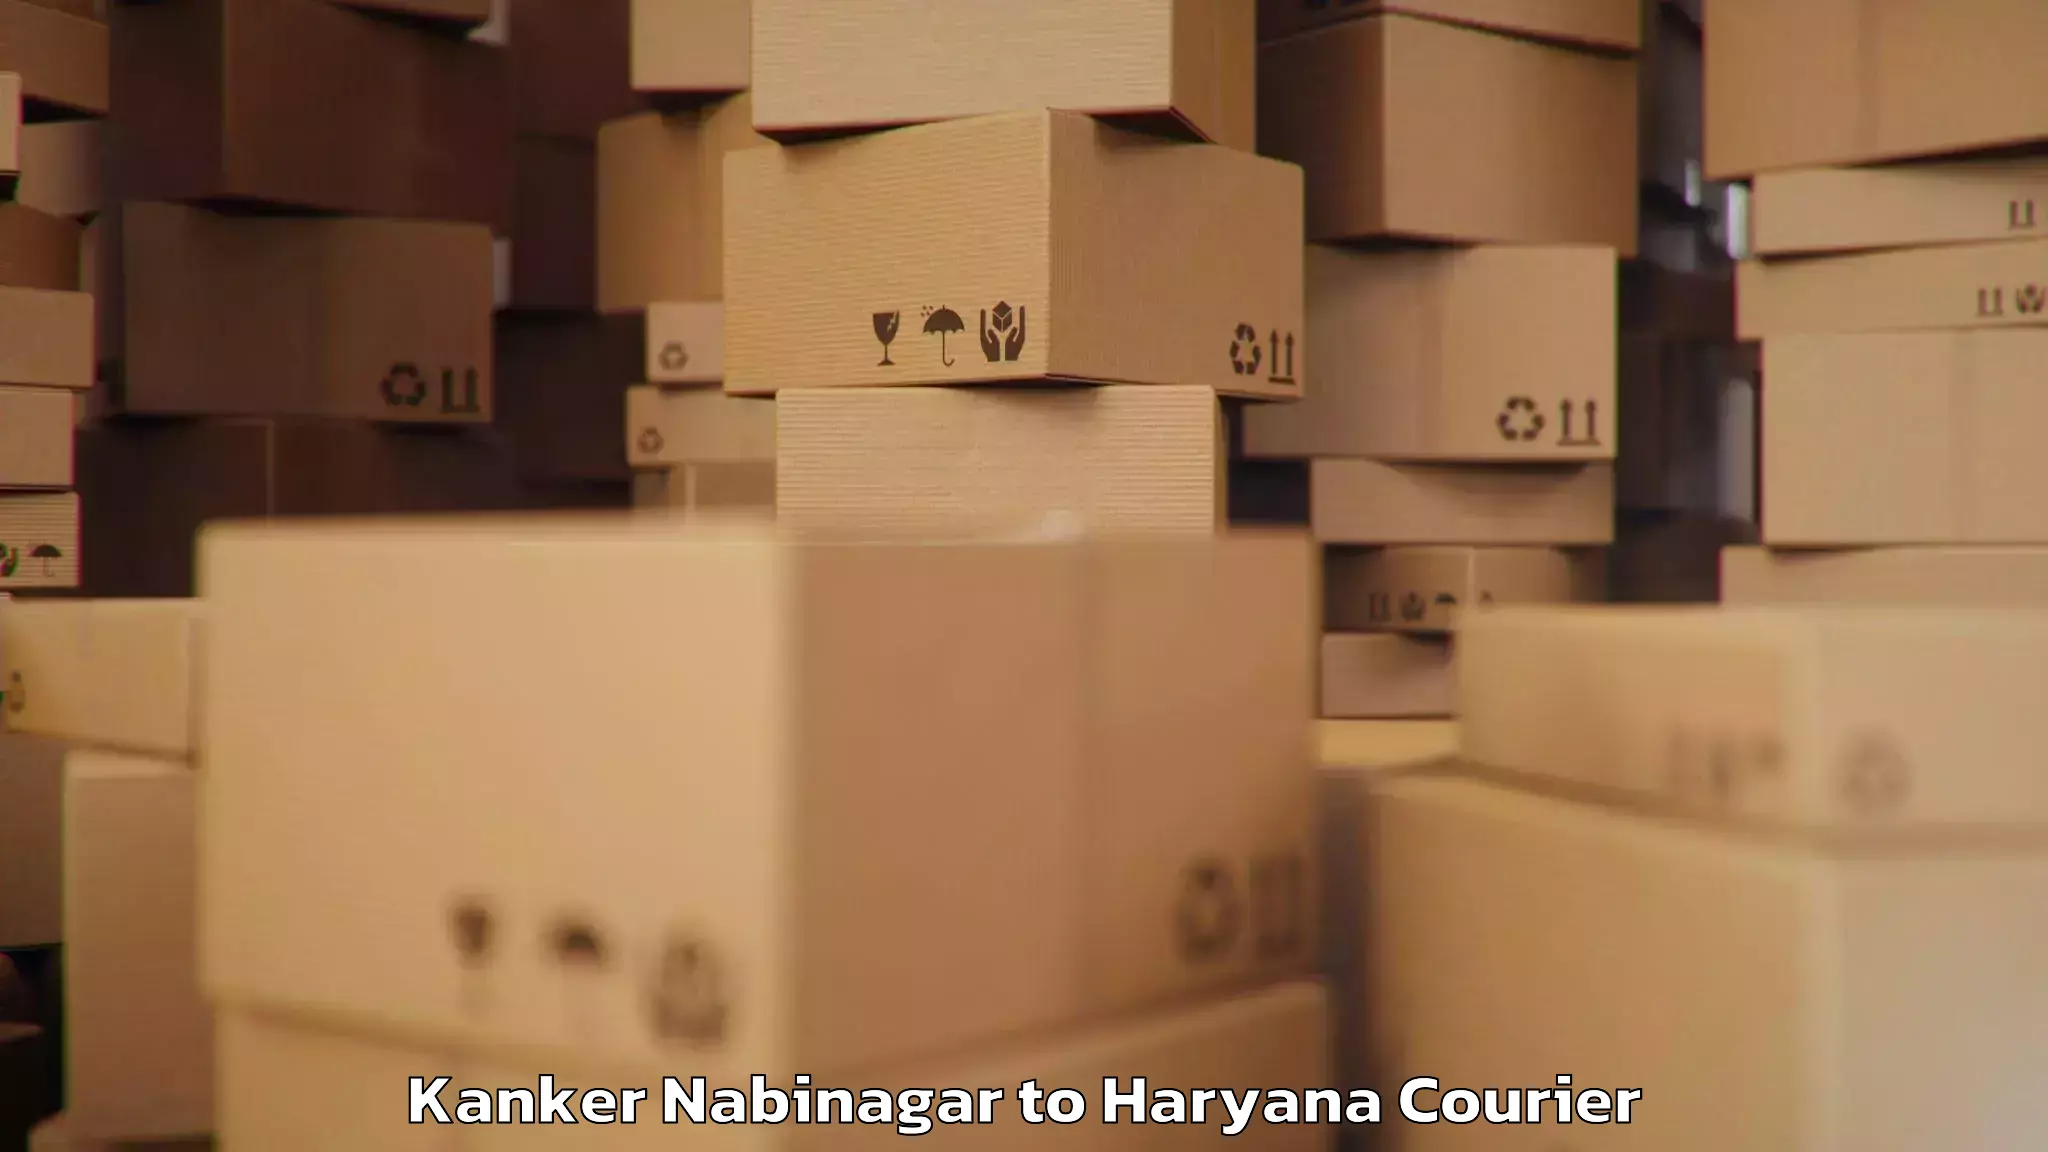 Baggage delivery management Kanker Nabinagar to Fatehabad